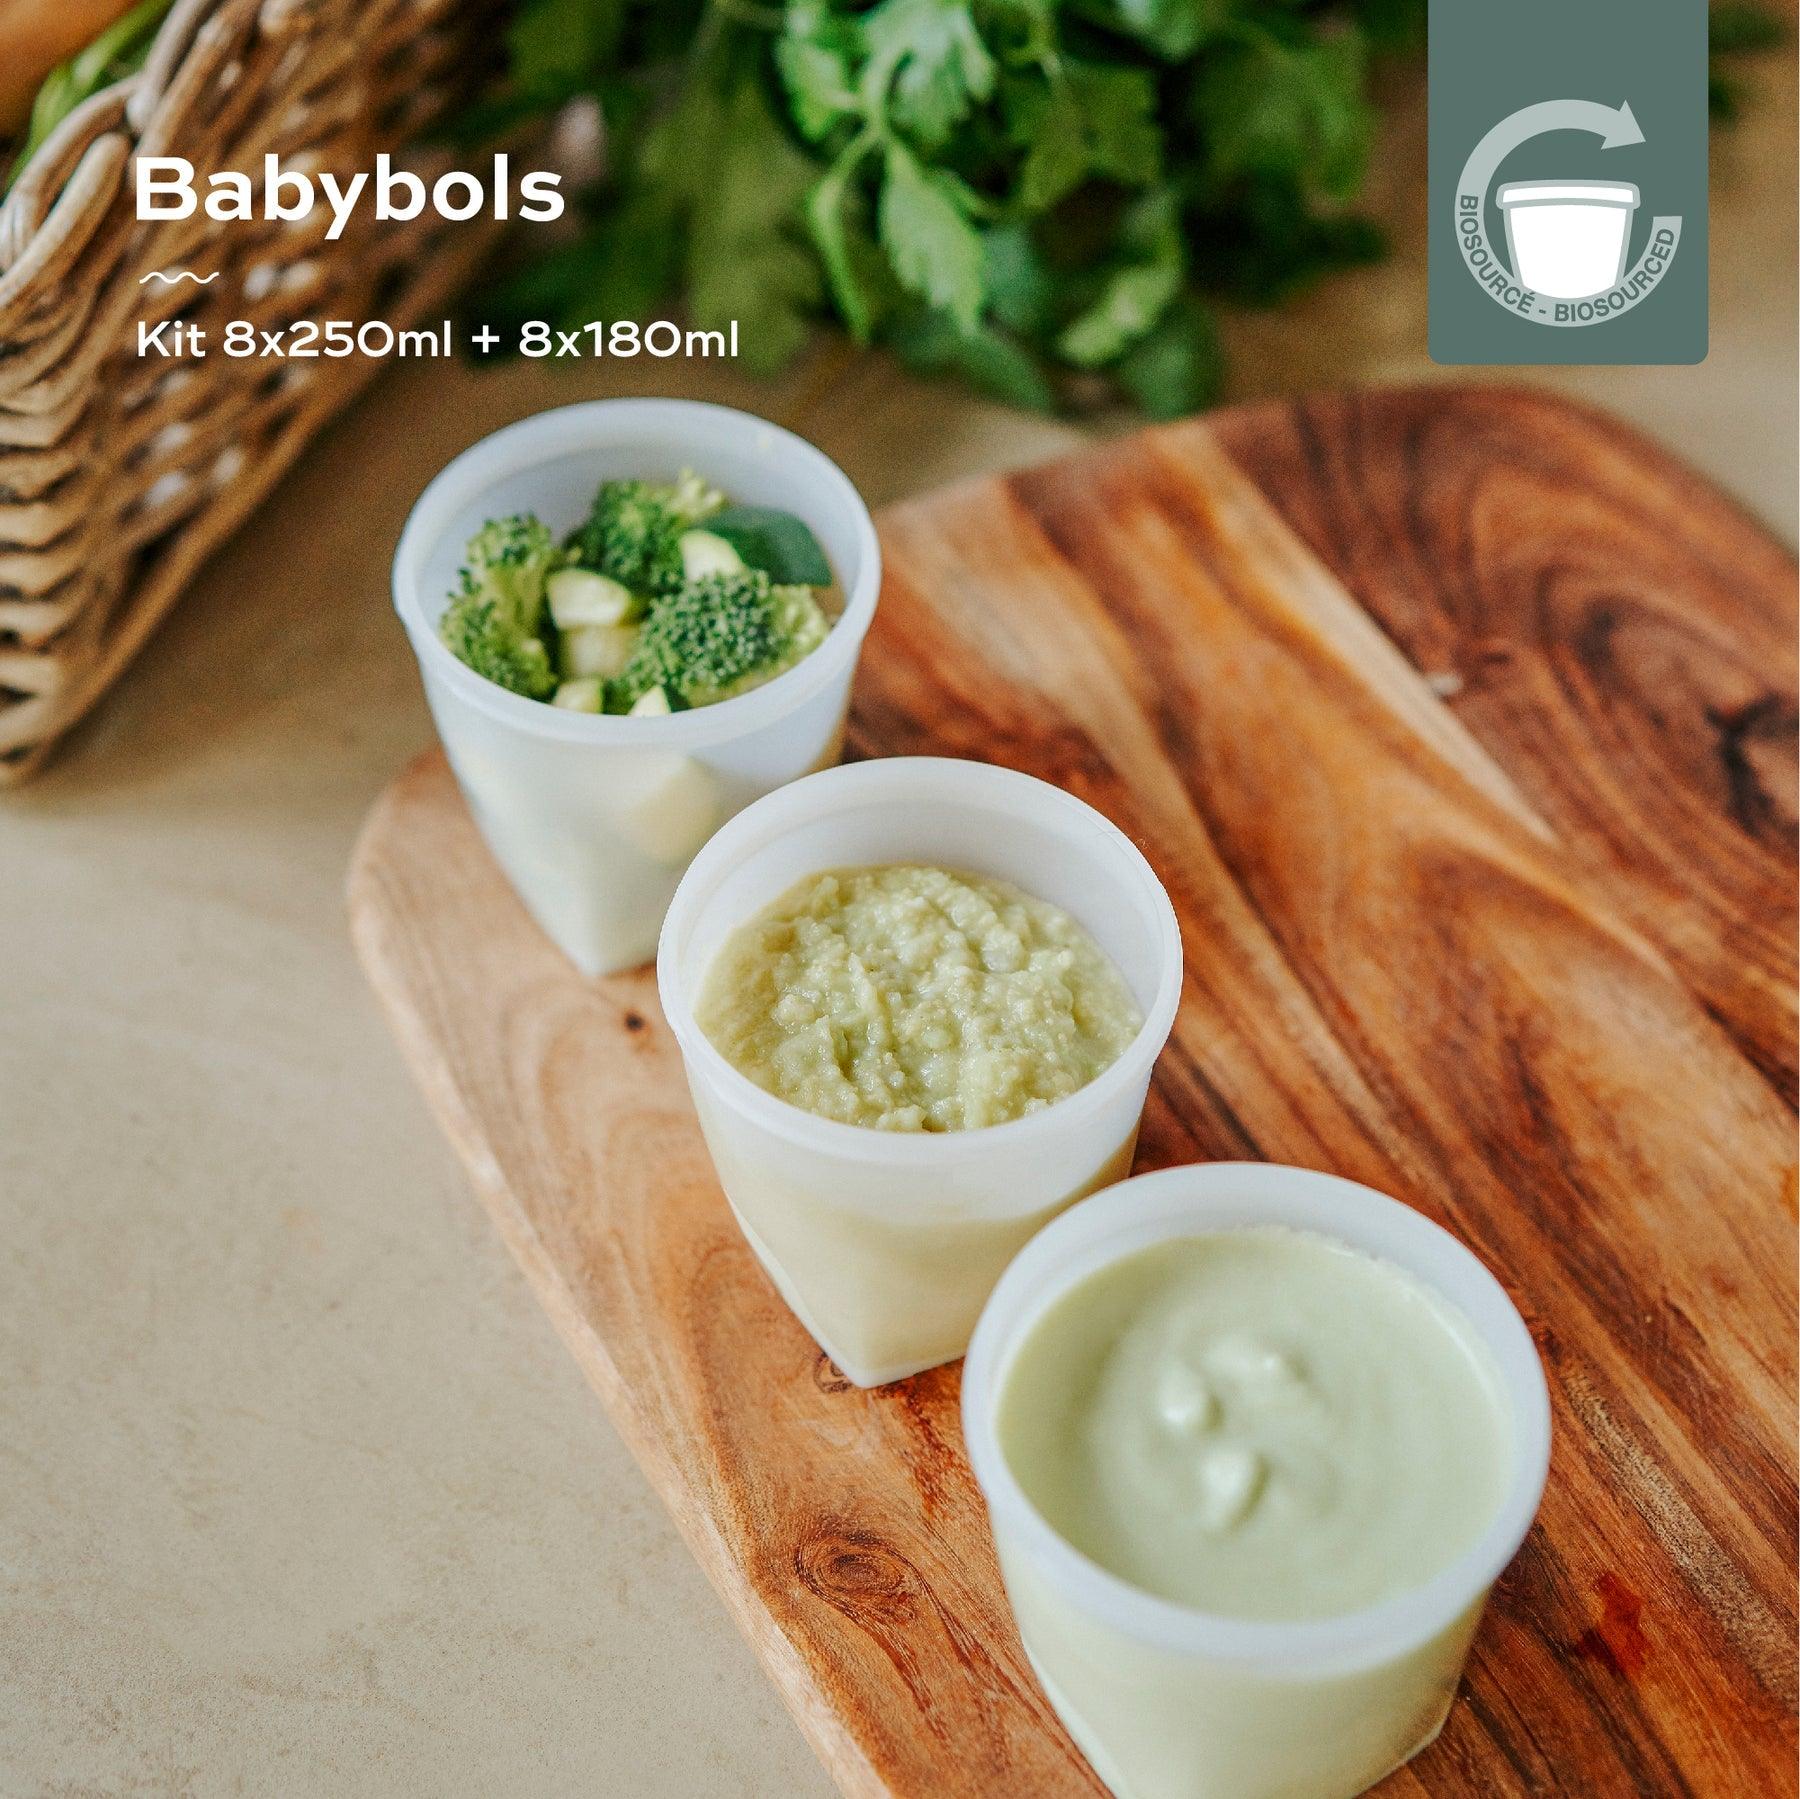 Babymoov - Babymoov Bio-based babybols - Baby storage jars - Mari Kali Stores Cyprus